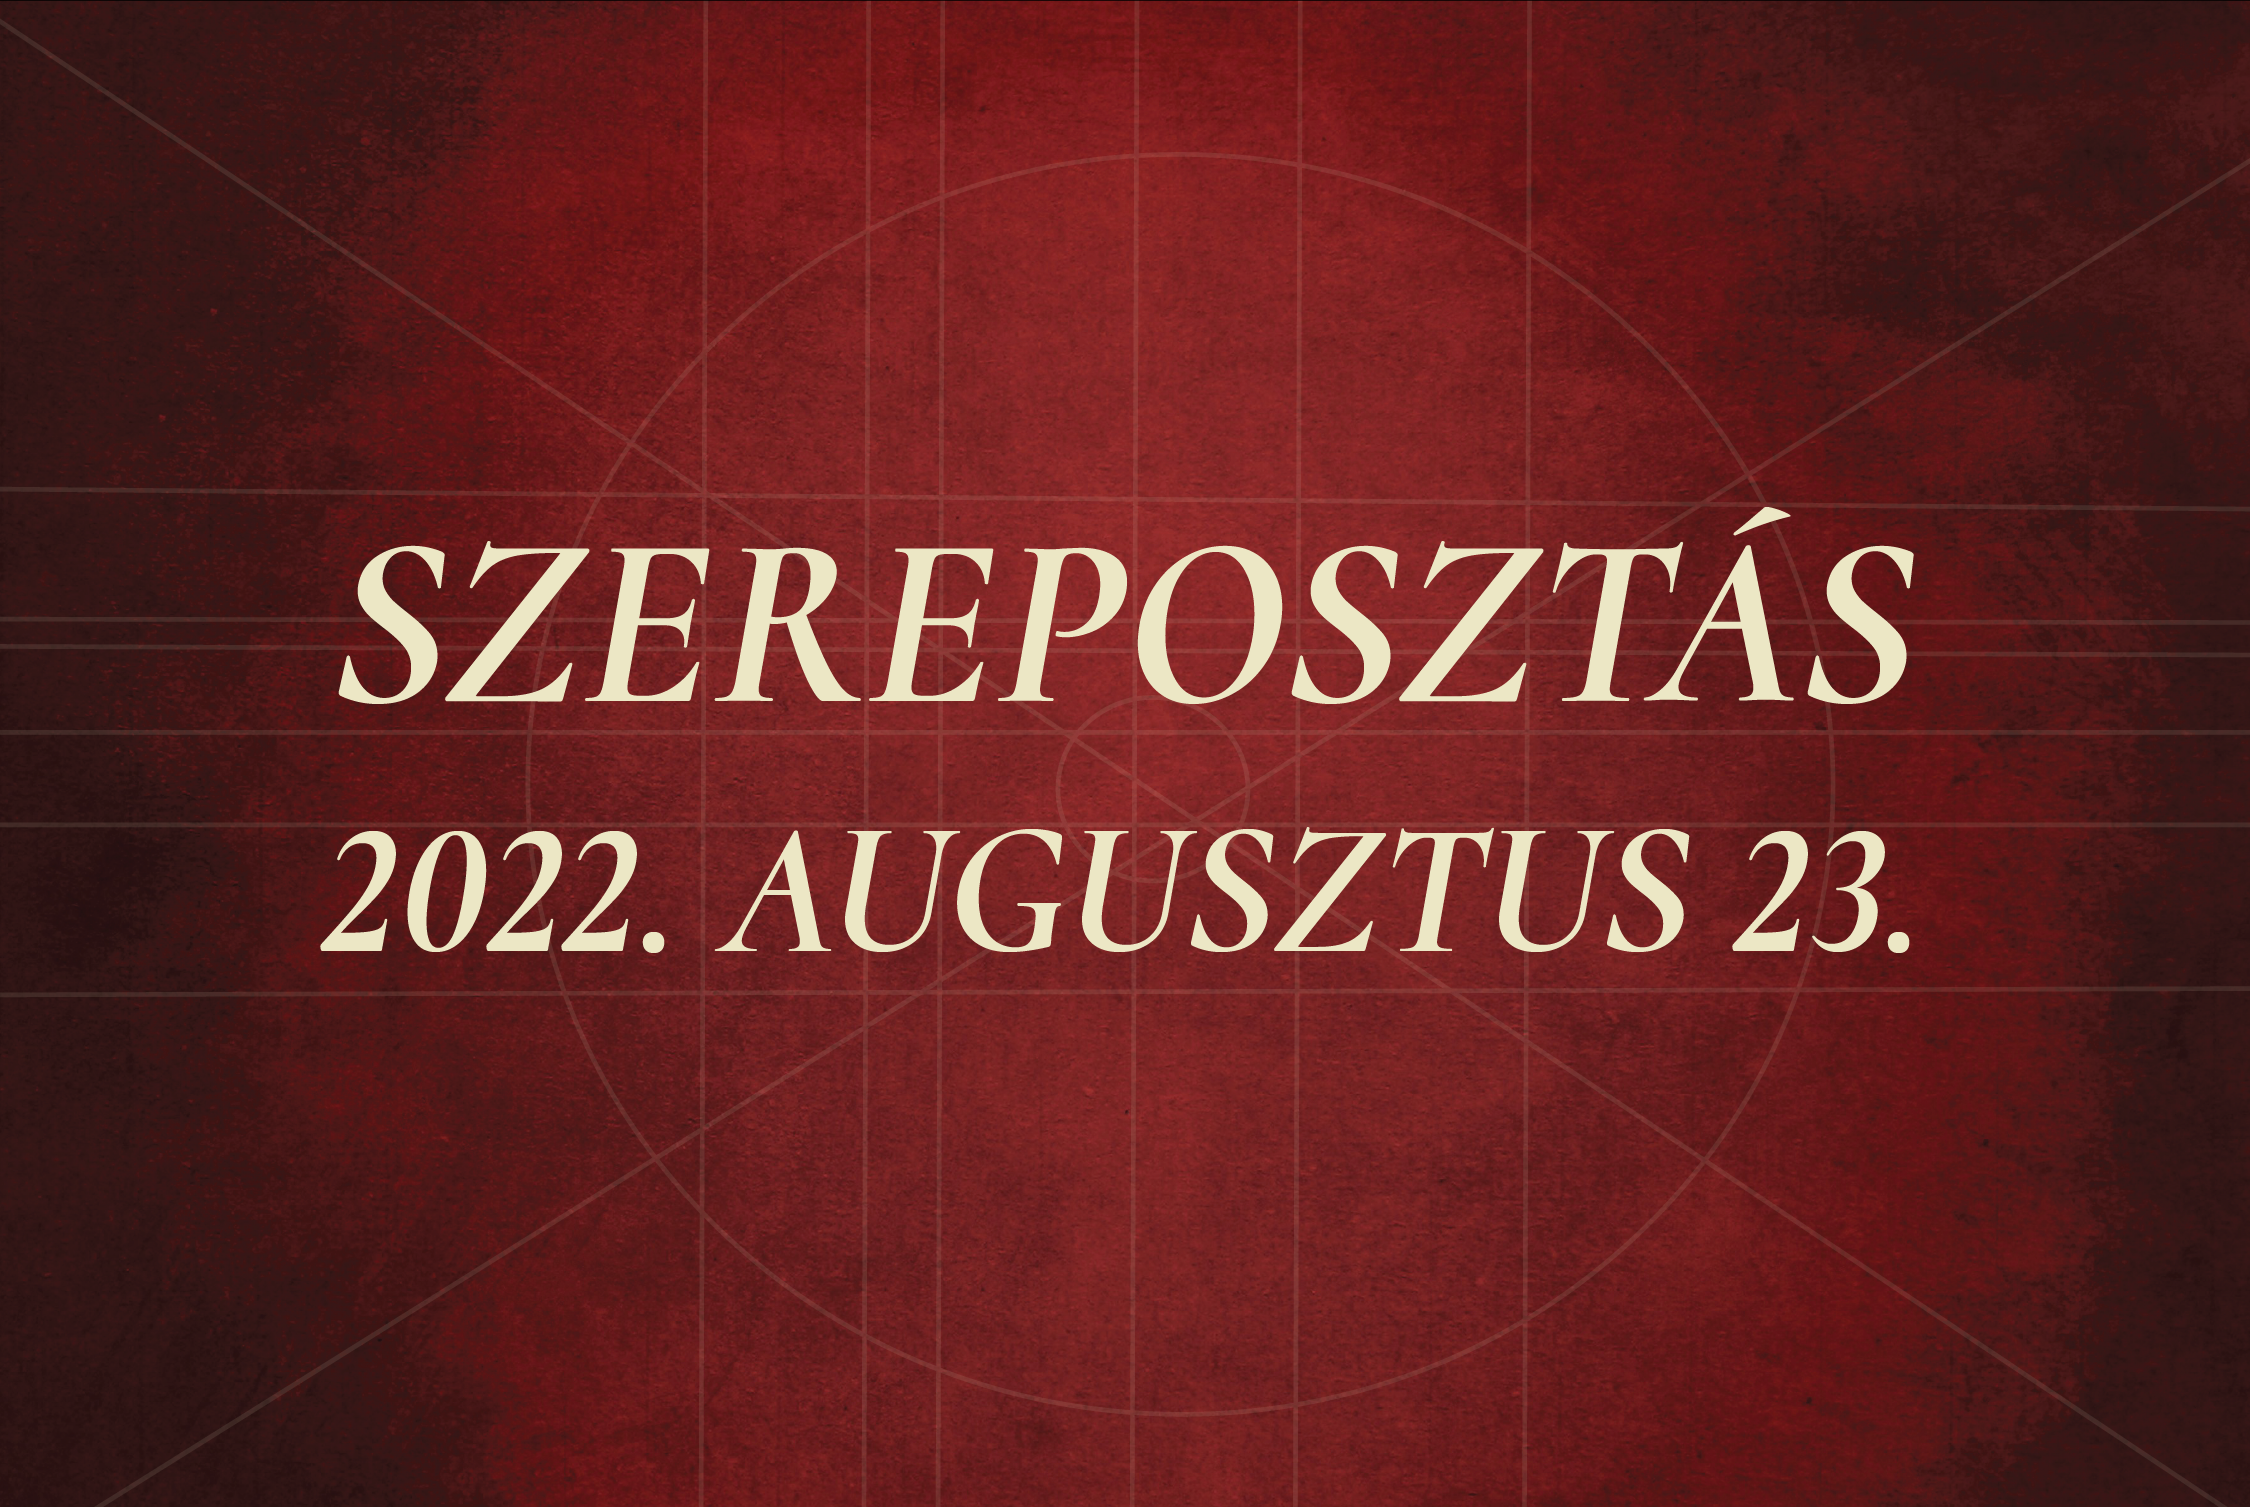 Szereposztás / 2022.08.23.